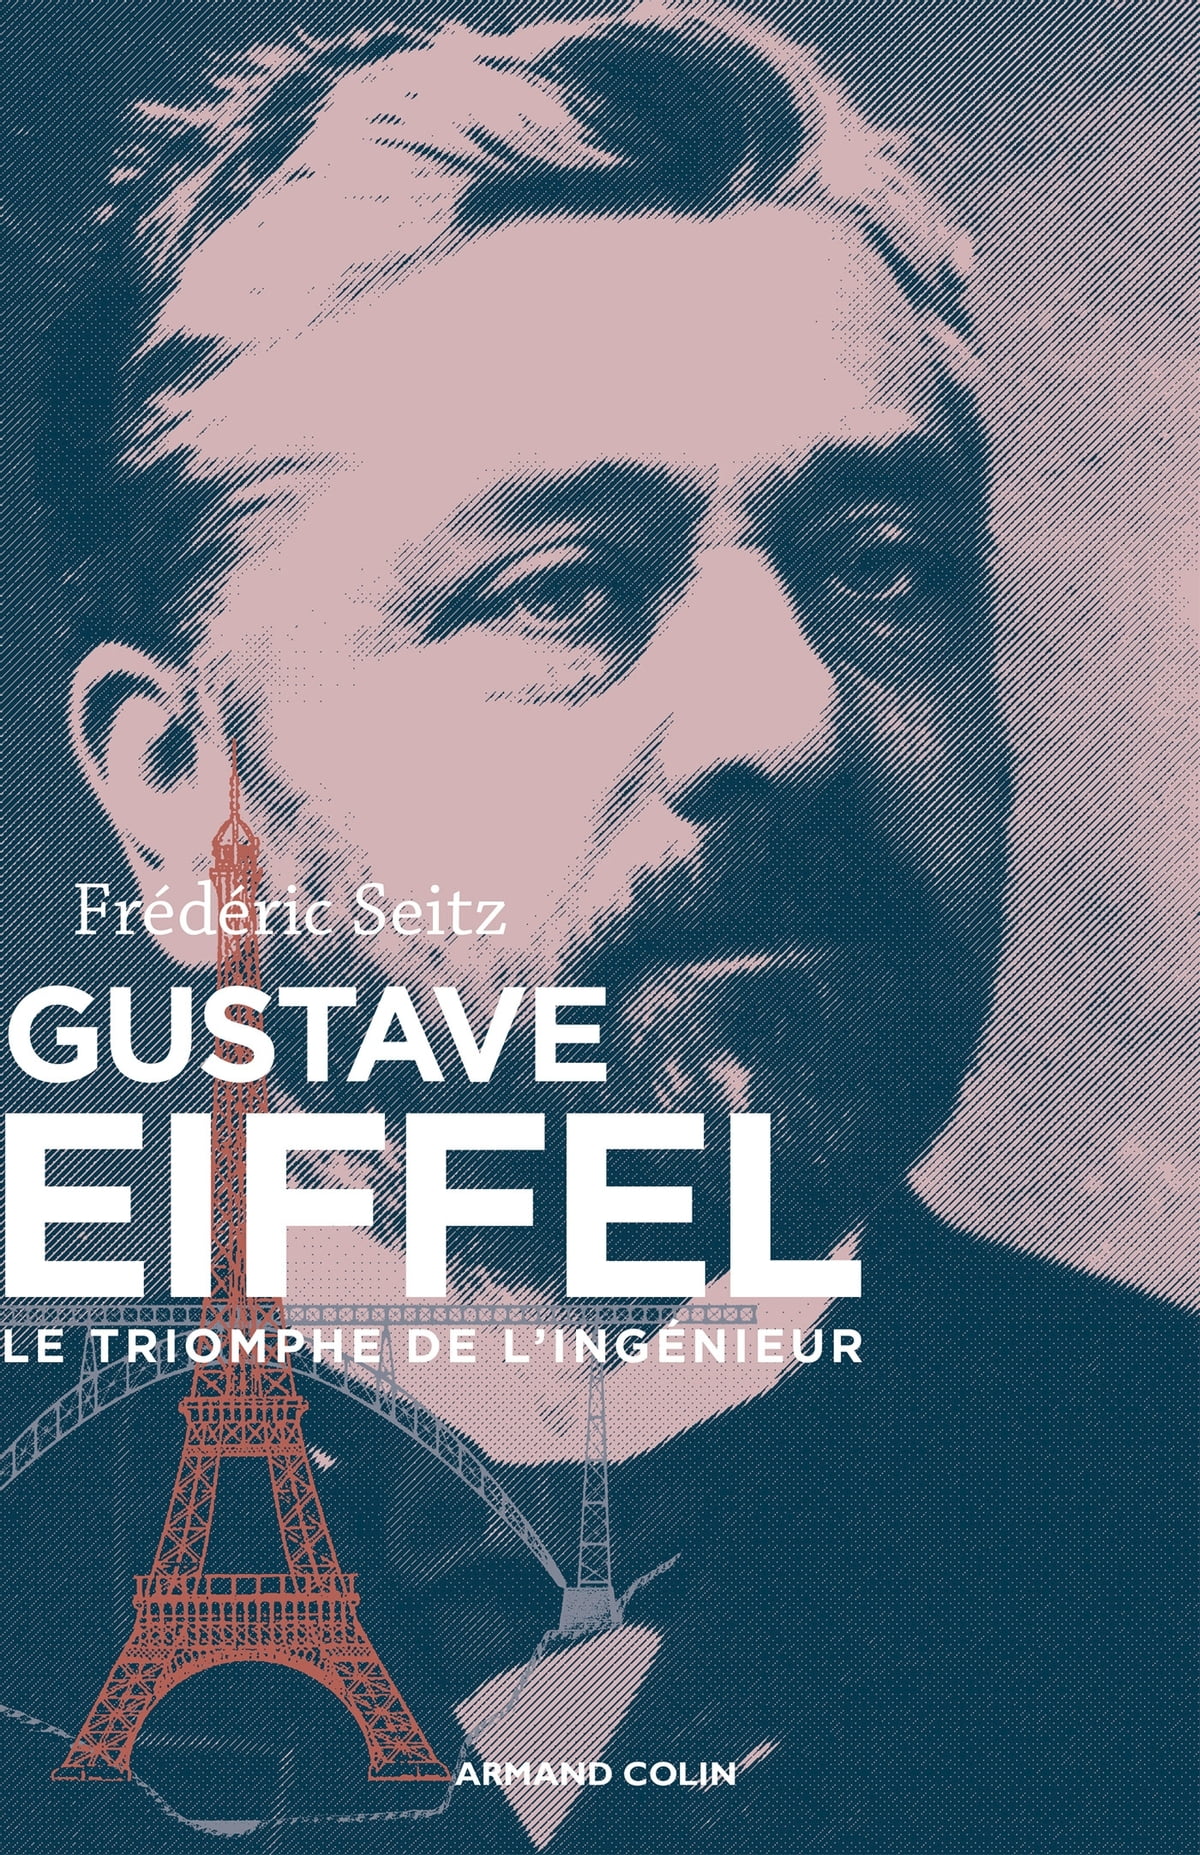 Seitz, Frederic Gustave Eiffel : le triomphe de l'ingenieur 